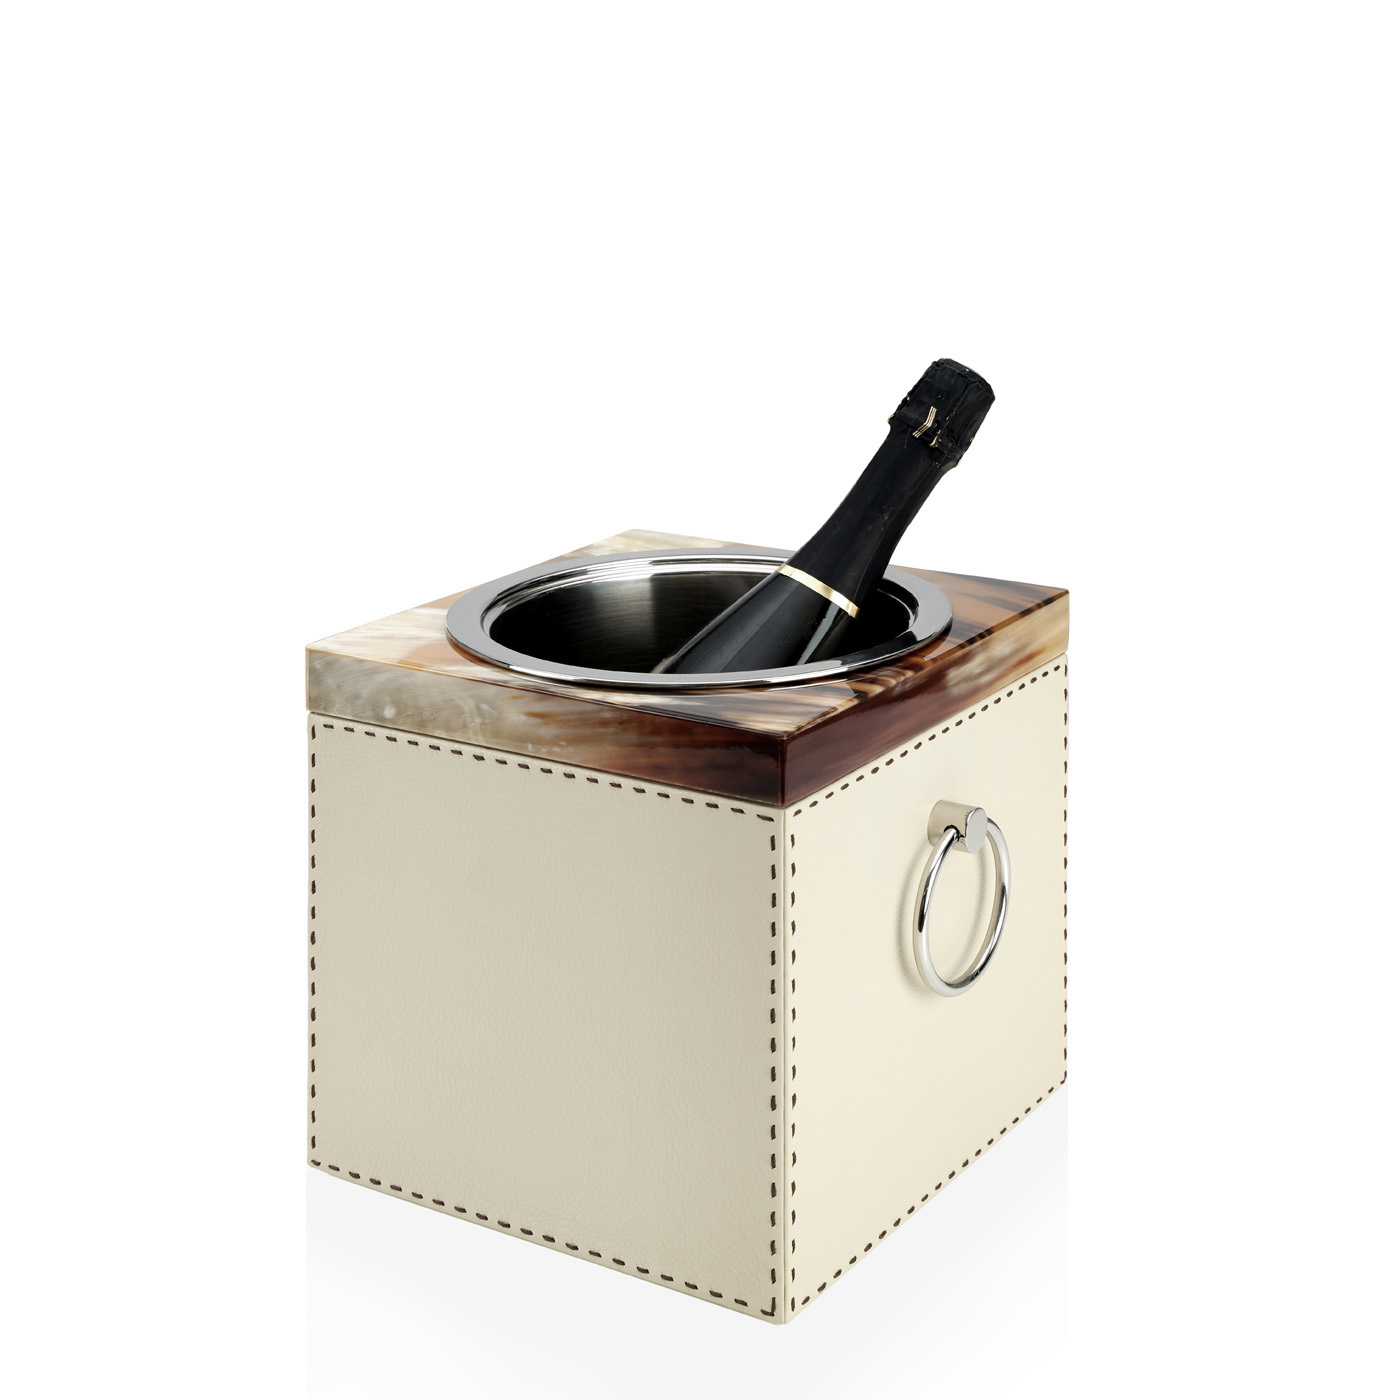 Accessori tavola - Nives secchiello champagne in corno e pelle martellata Ice-cream mod. 4455 - Arcahorn